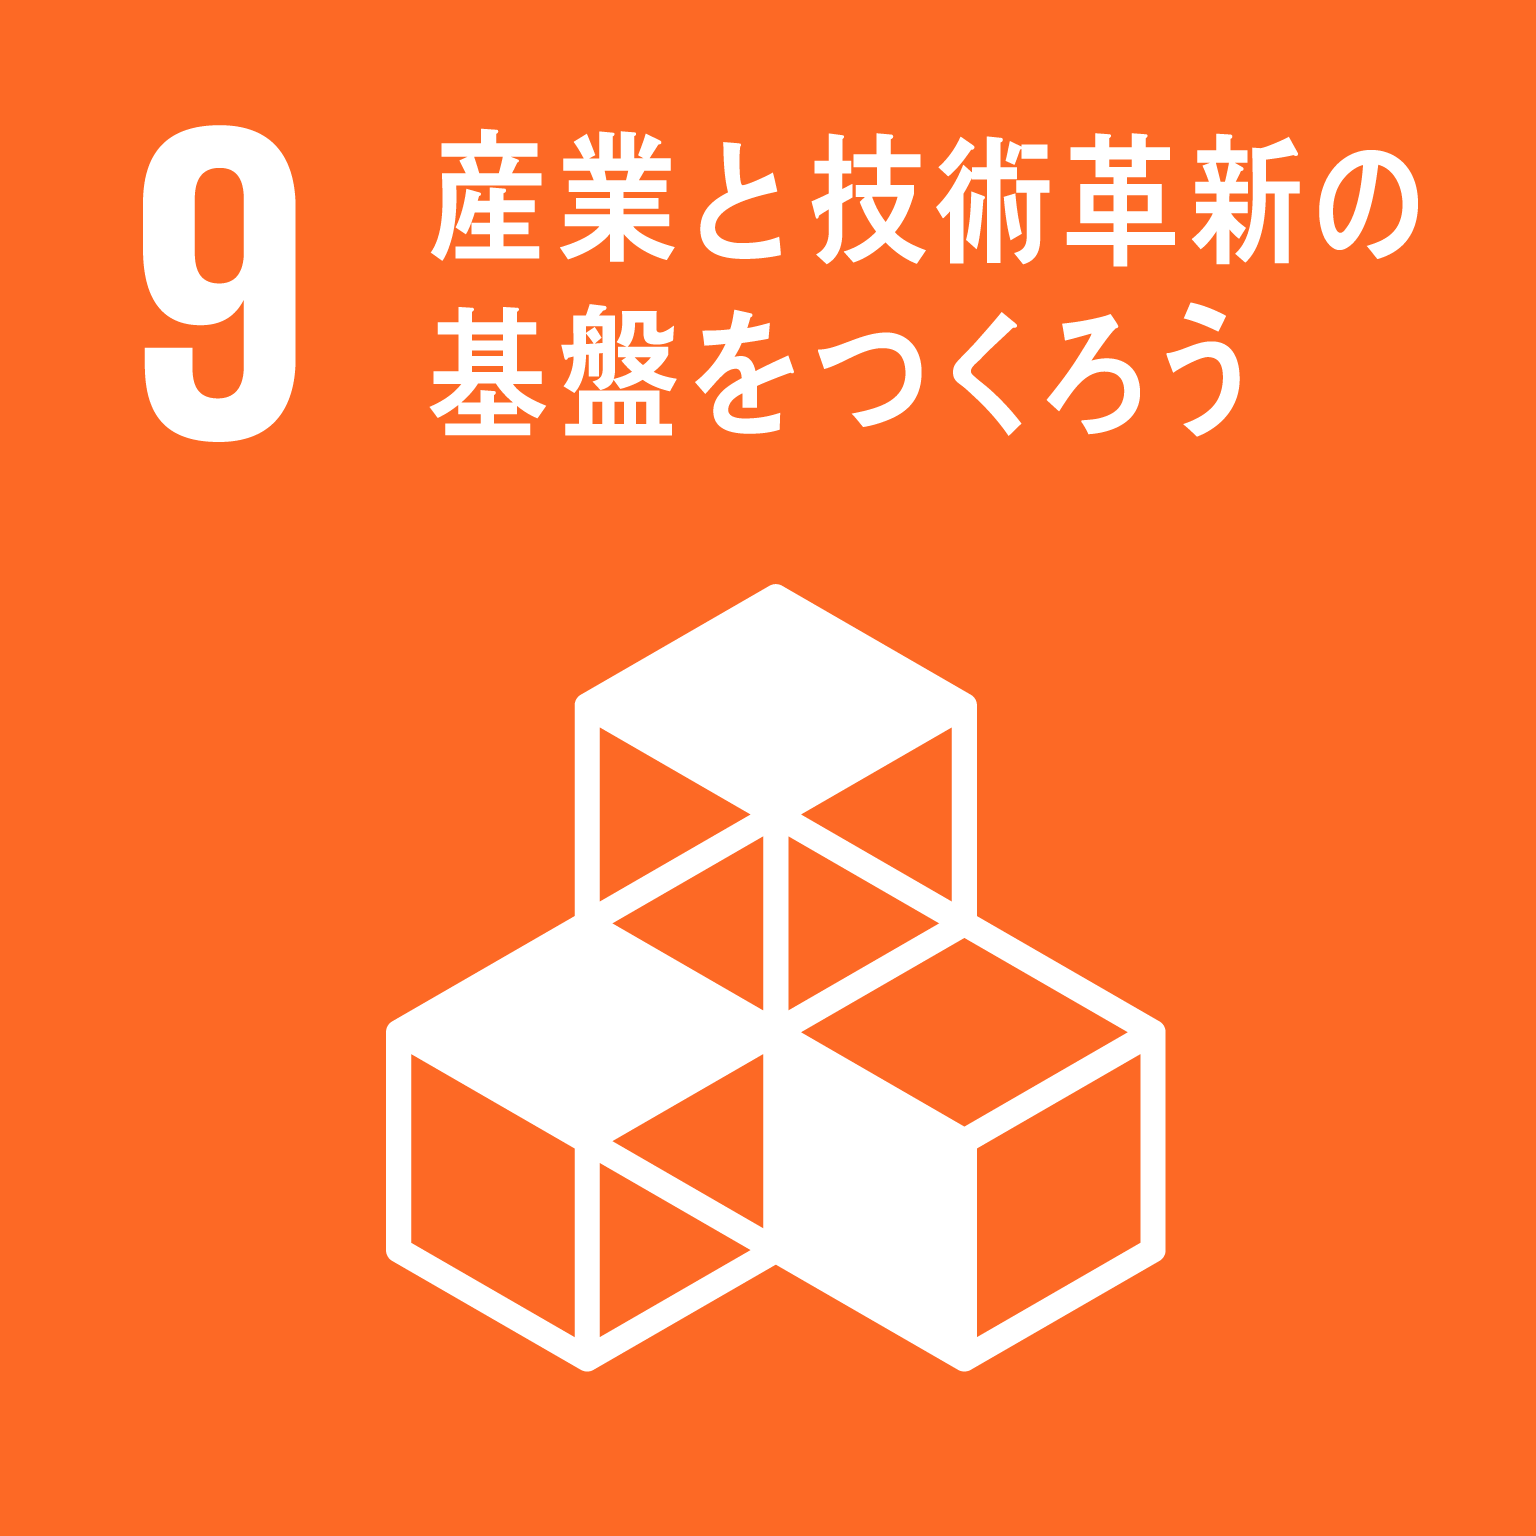 「9.産業と技術革新の基盤を作ろう」の文字と目標9のロゴ